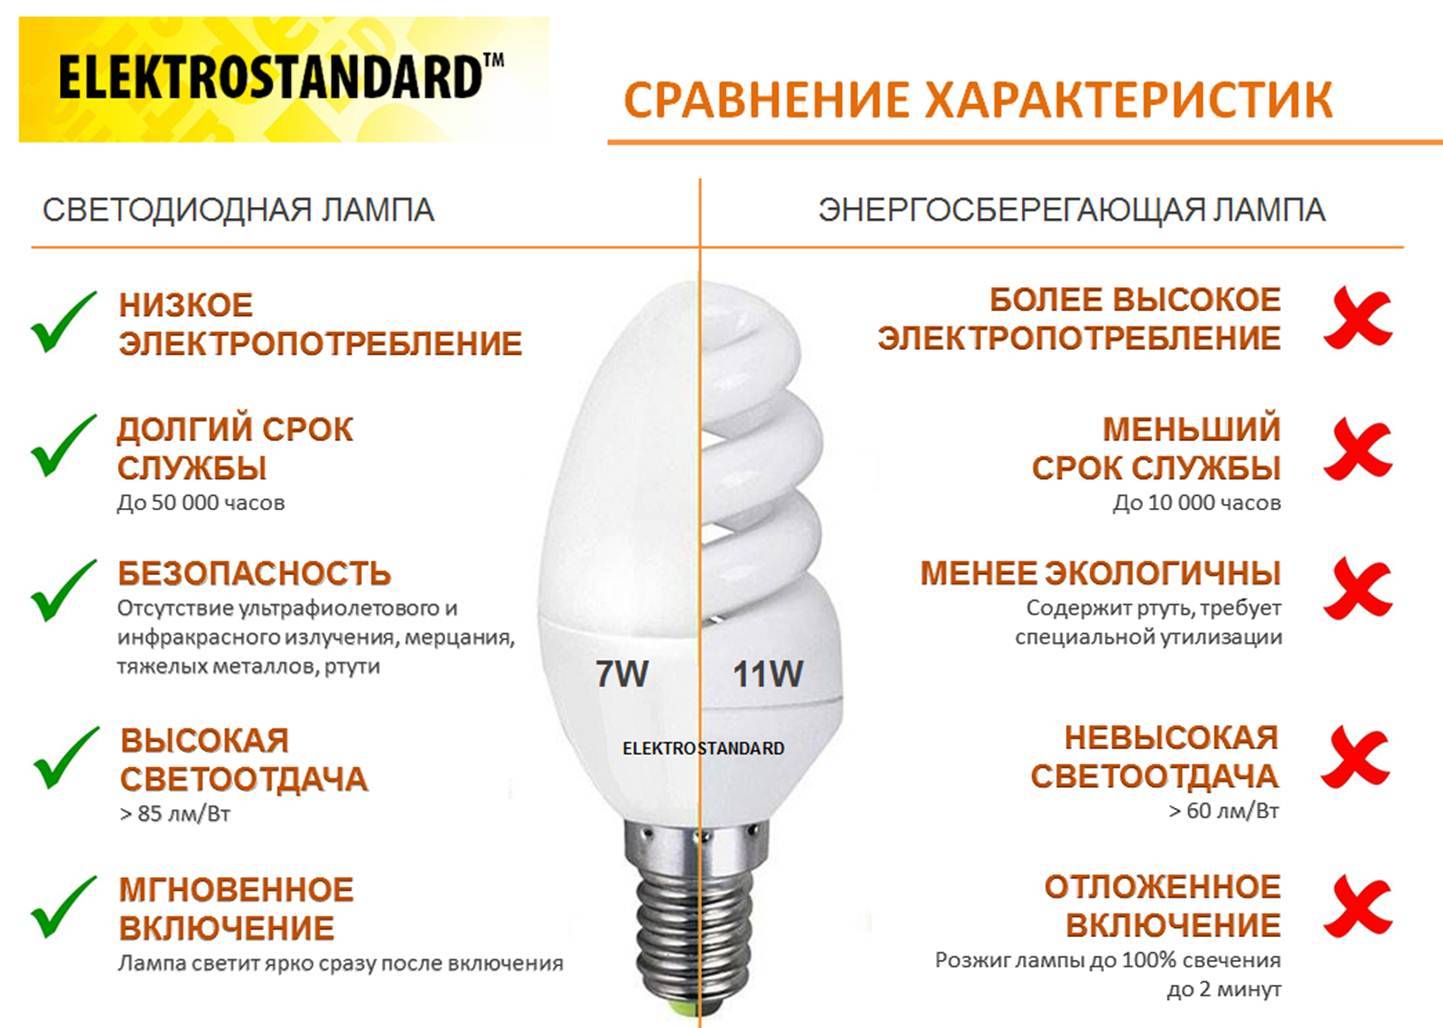 Чем различаются энергосберегающие и светодиодные лампы